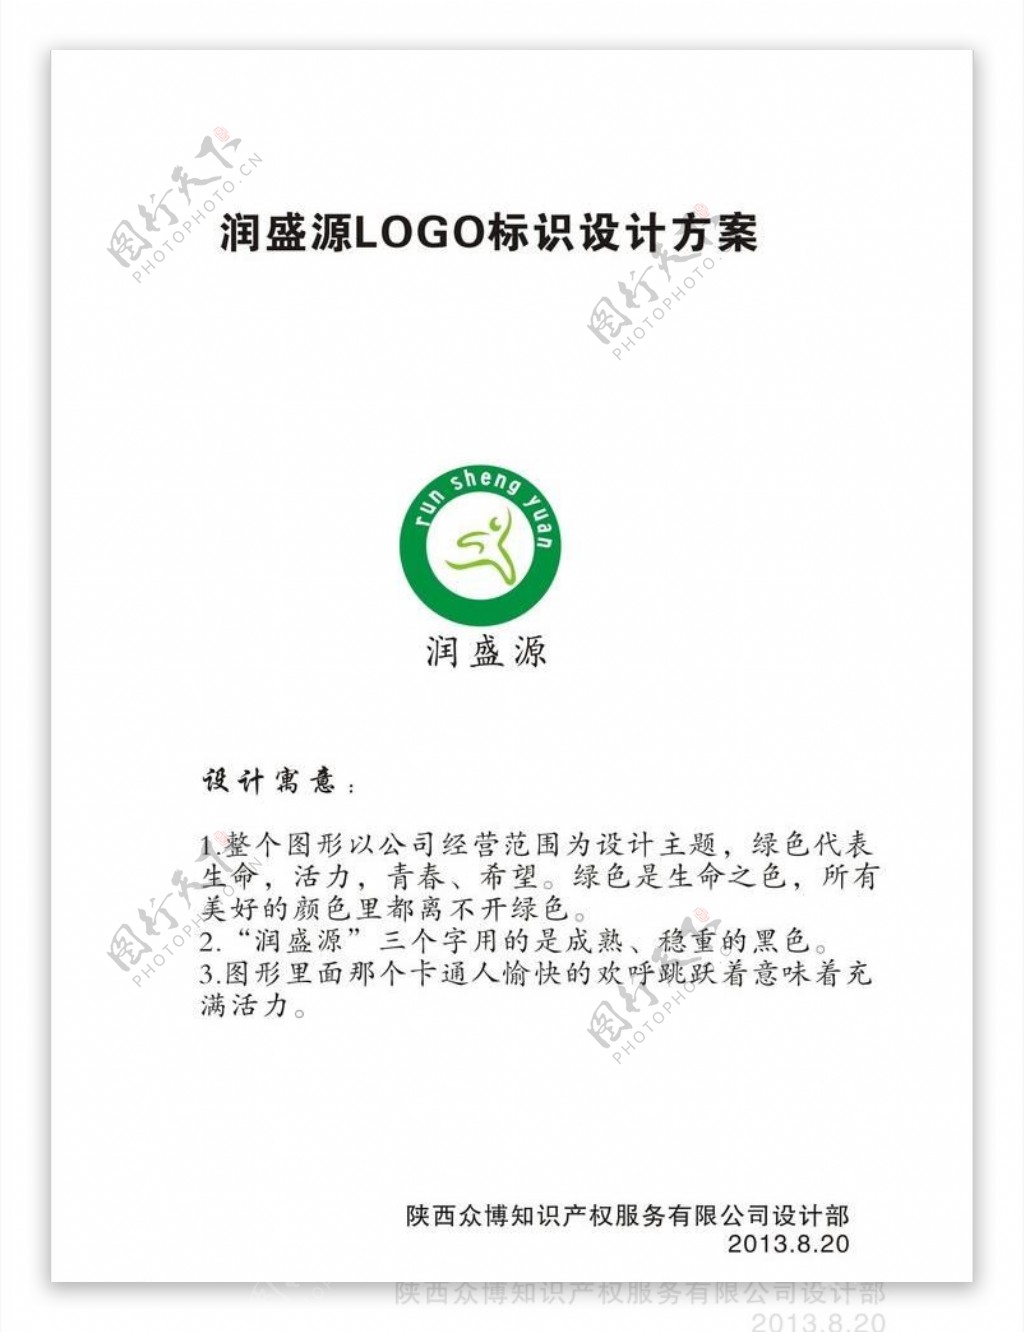 润盛源logo图片